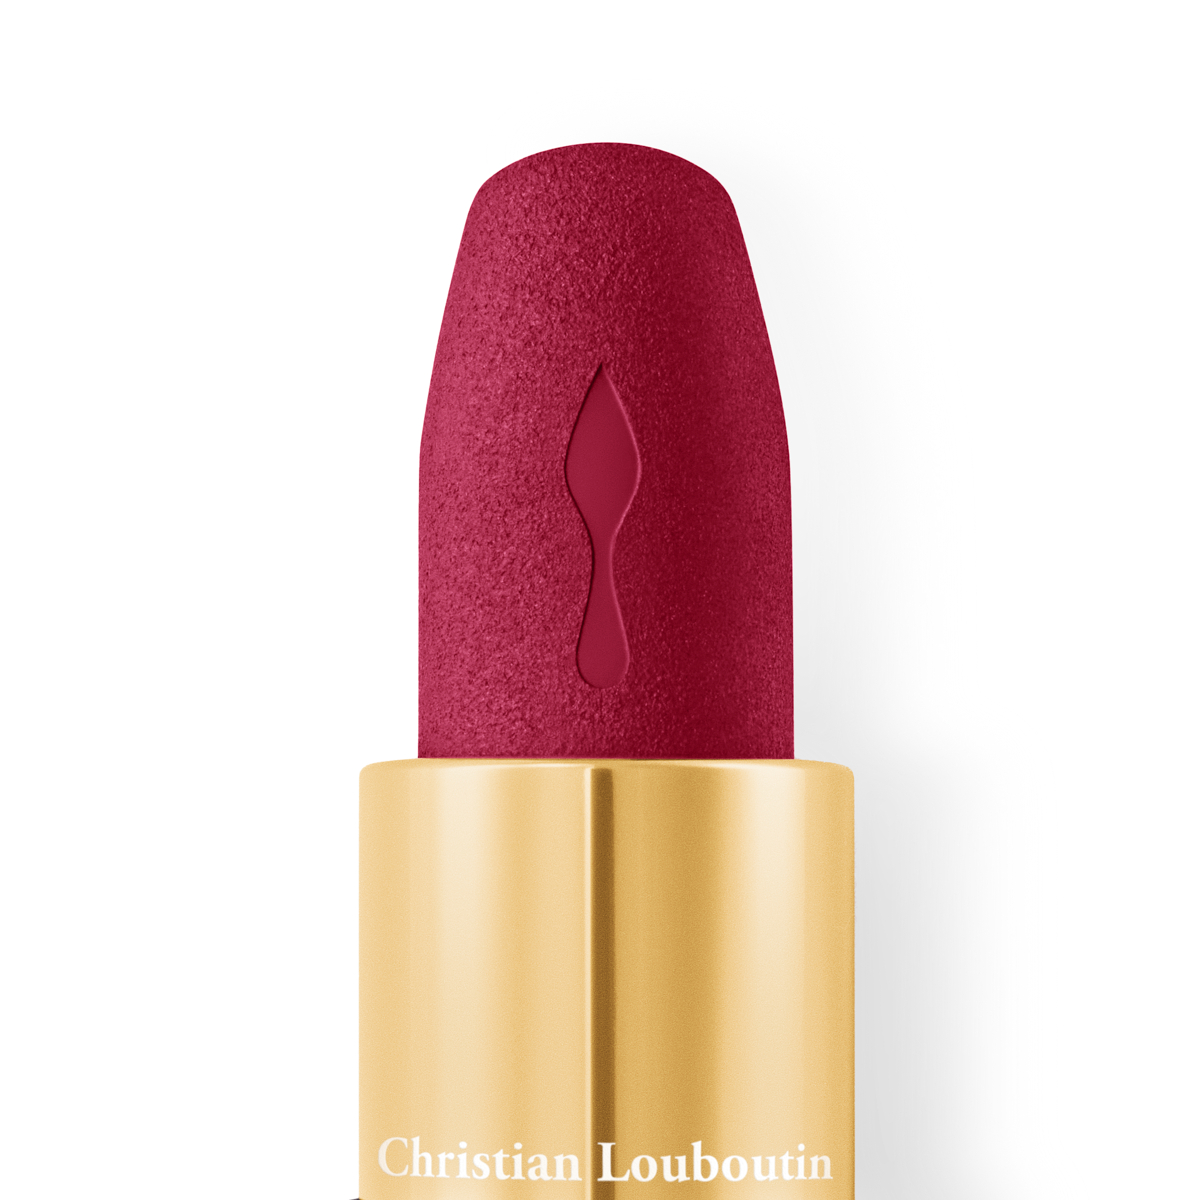 Christian Louboutin Velvet Matte Lip Colour lipstick 